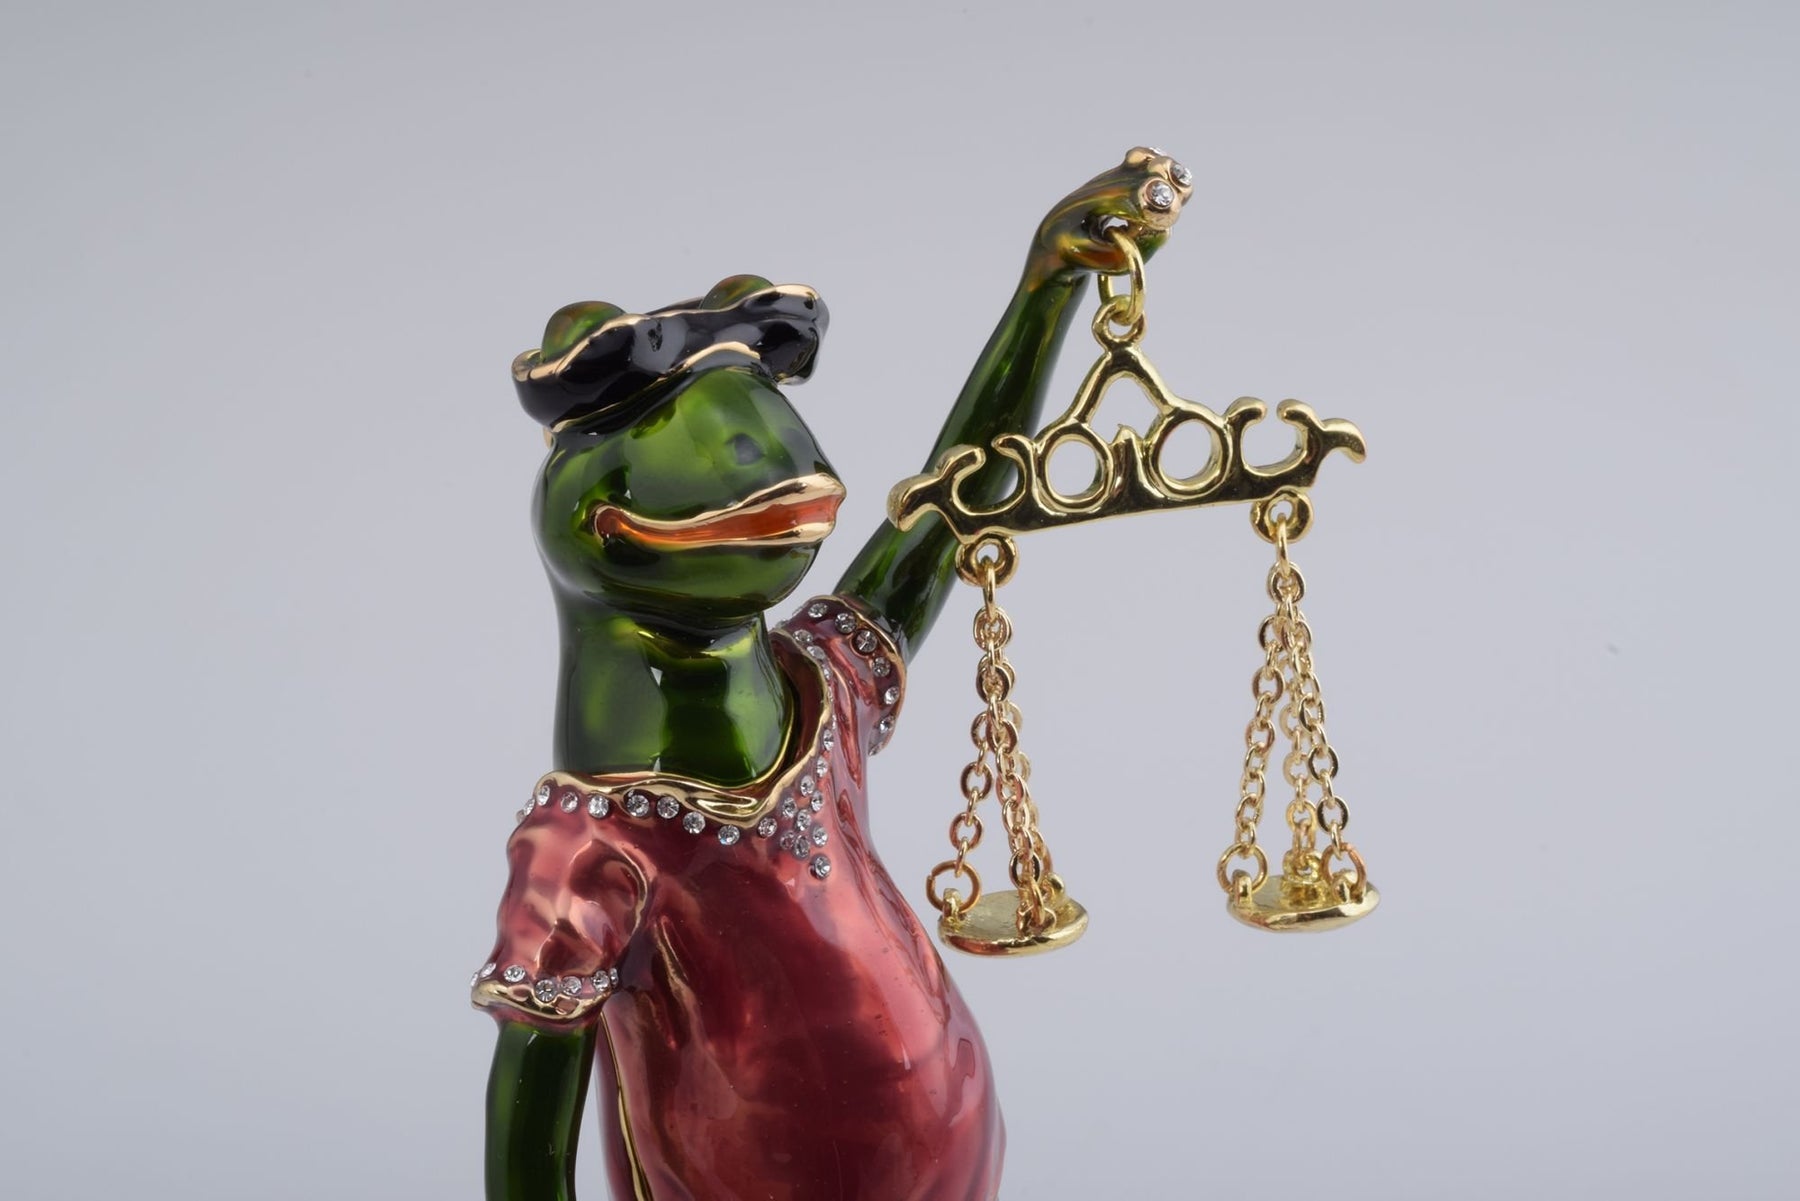 Keren Kopal Frog of Justice  112.25